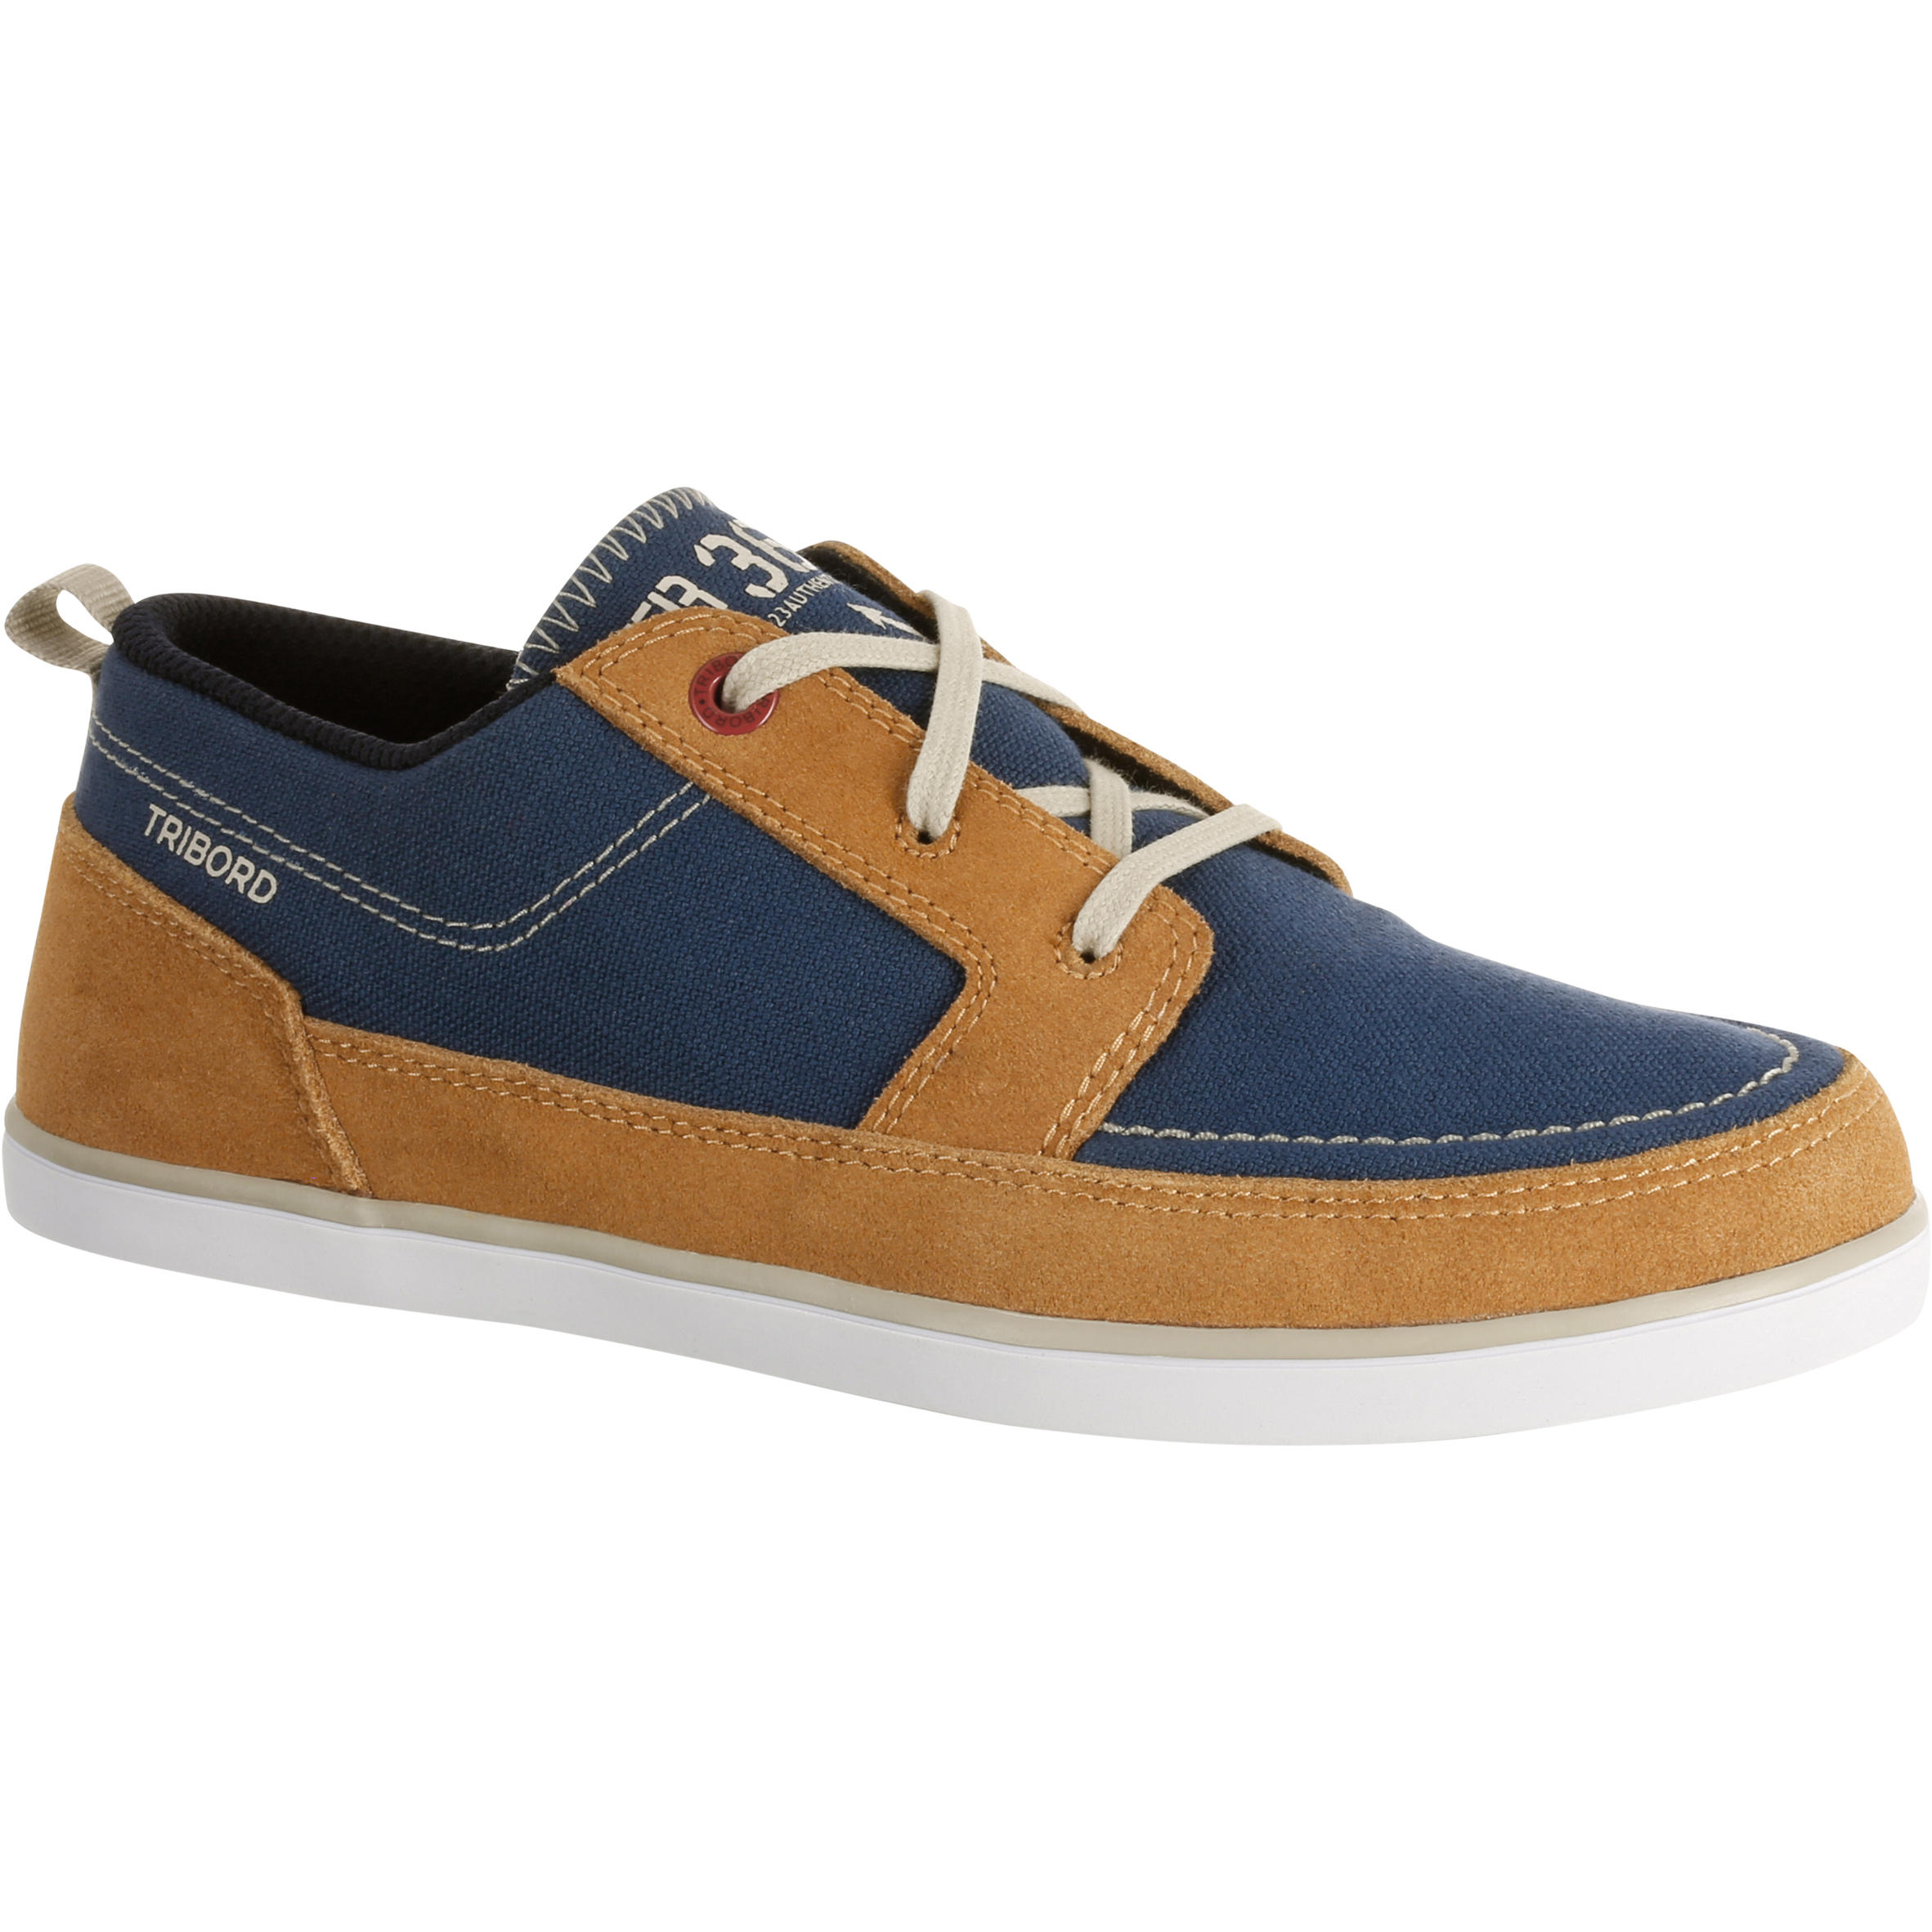 Kostalde Children's Boat Shoes - Blue/Brown